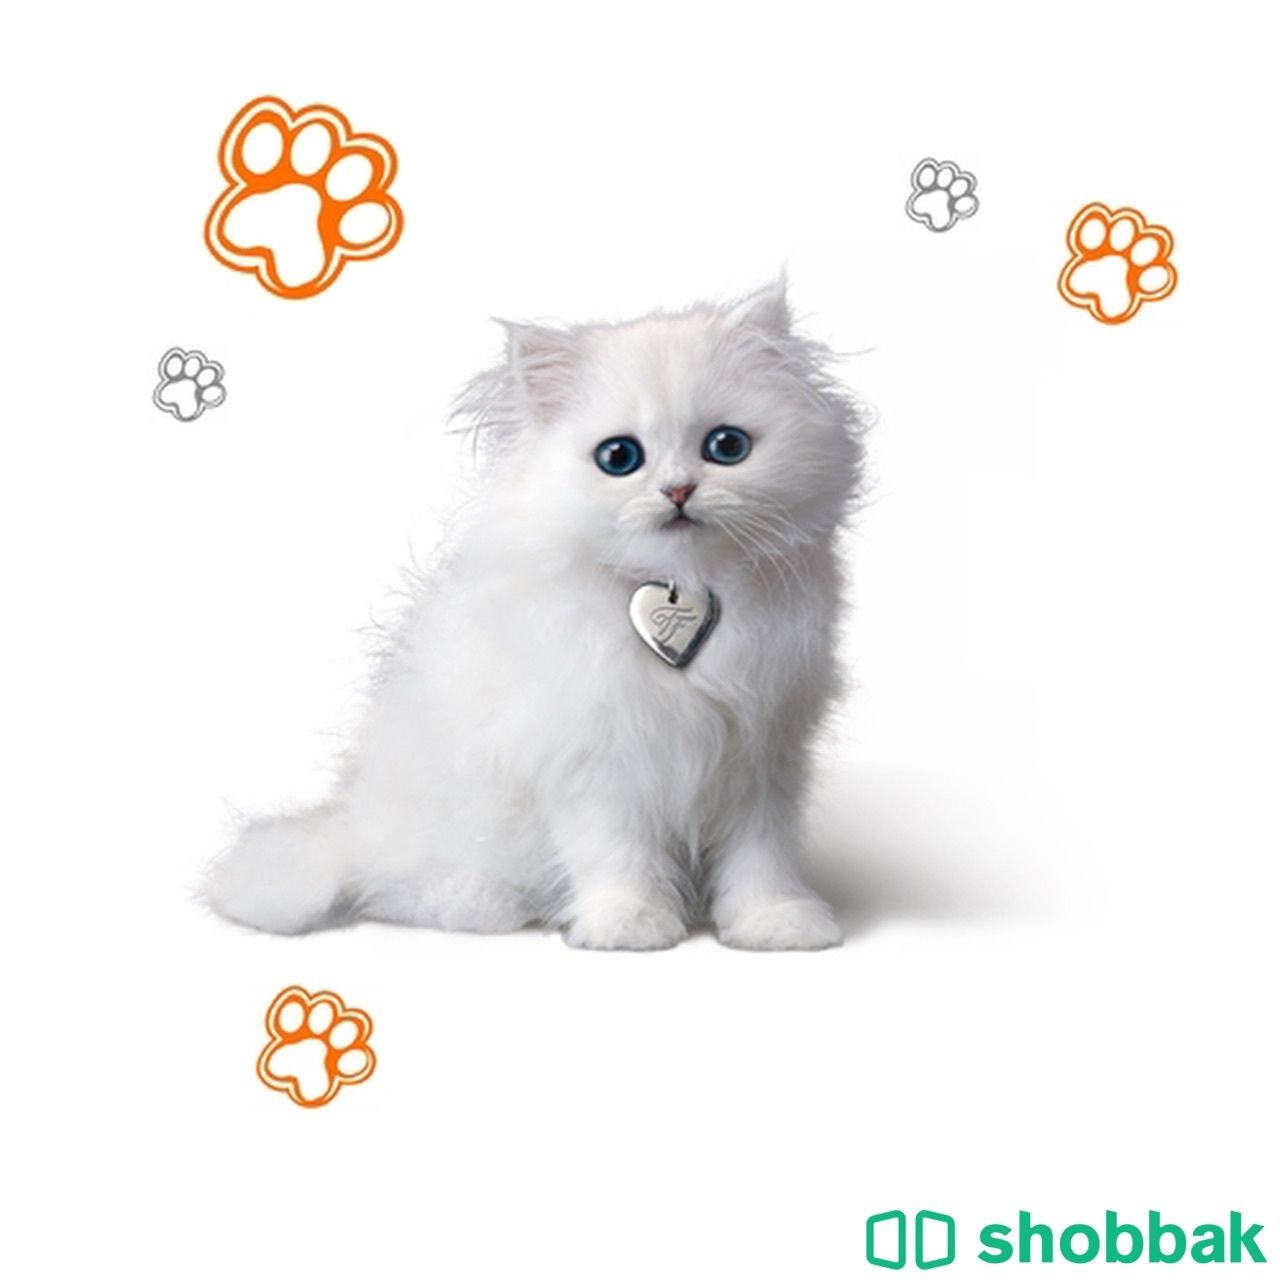 اسويلك شعار او لوجو ل متجر الكتروني ل بيع قطط او كلاب او خيل Shobbak Saudi Arabia